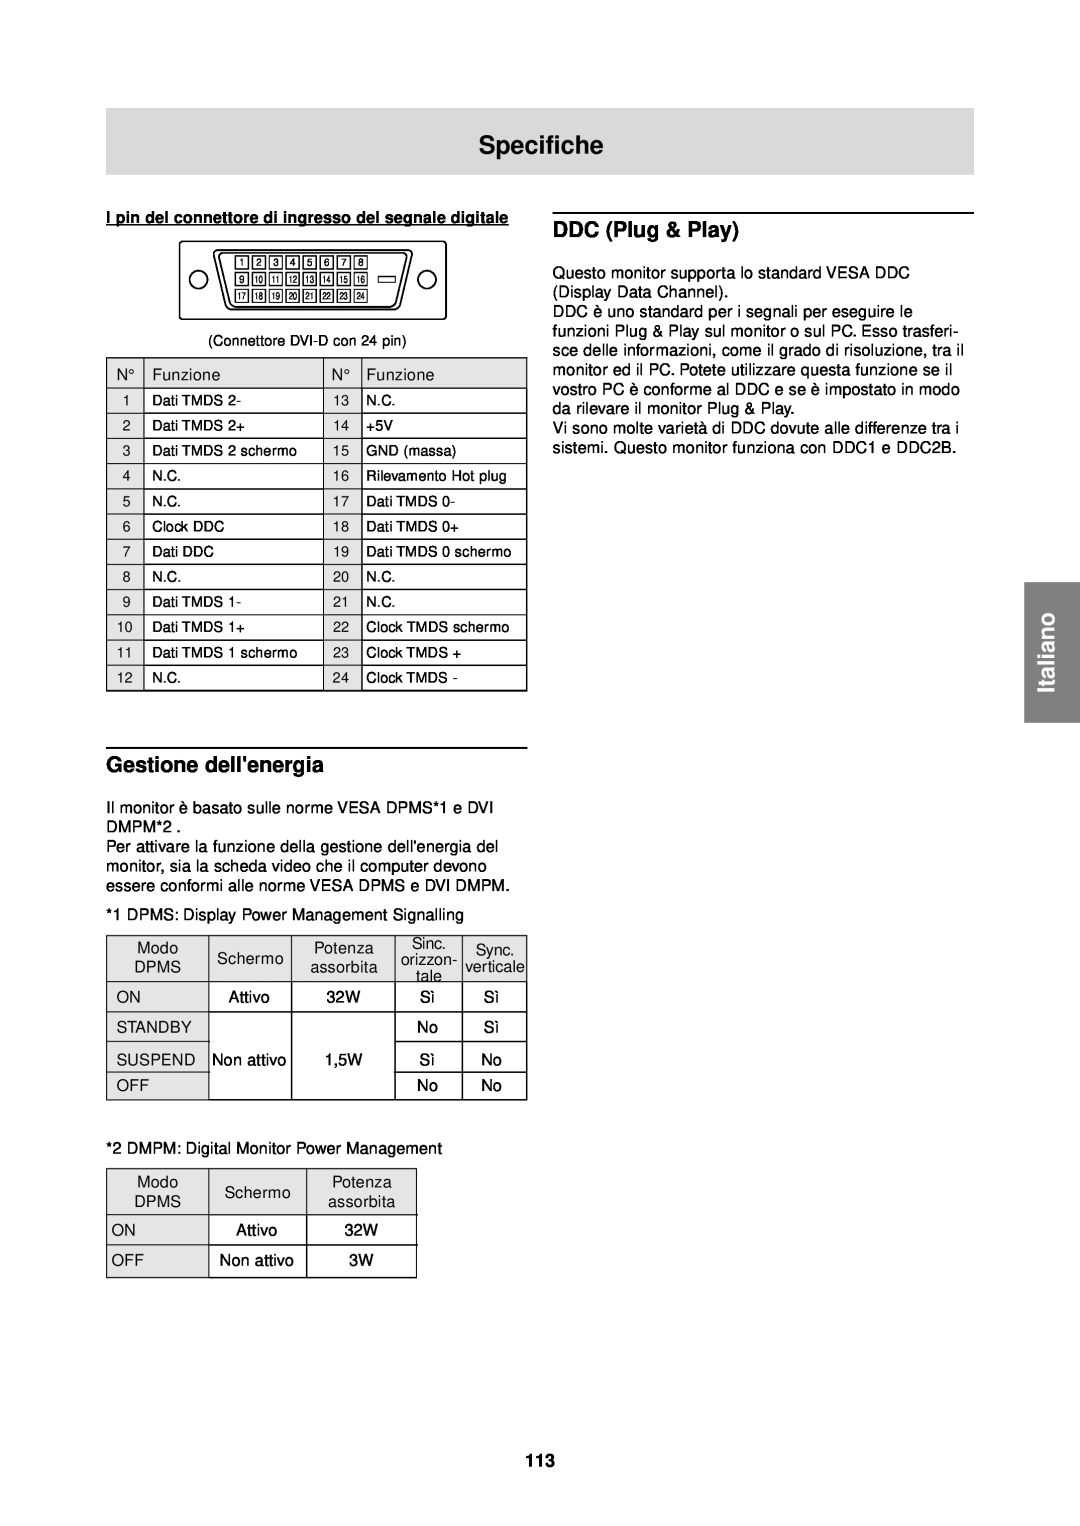 Sharp LL-T1610W operation manual Gestione dellenergia, Specifiche, Italiano, DDC Plug & Play 